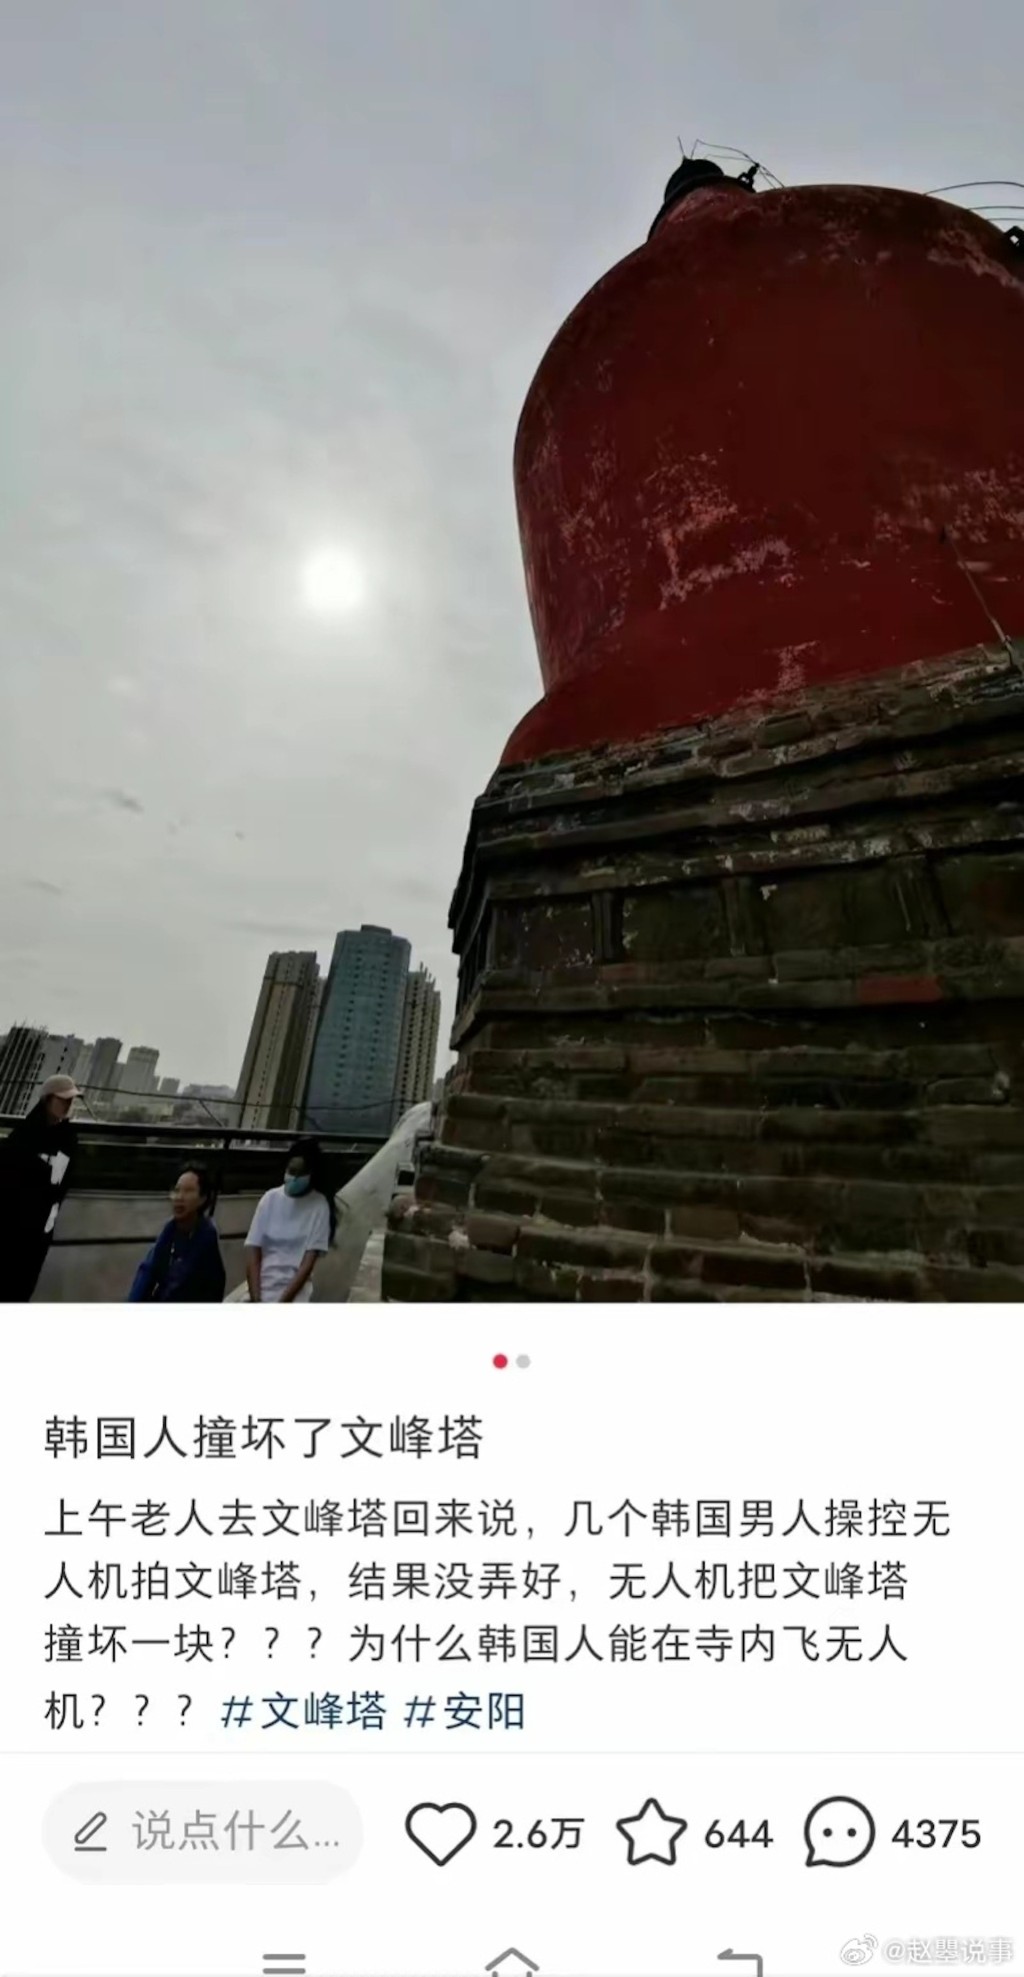 有网民反映河南文峰塔遭无人机刮碰，担心对其构成损害。微博